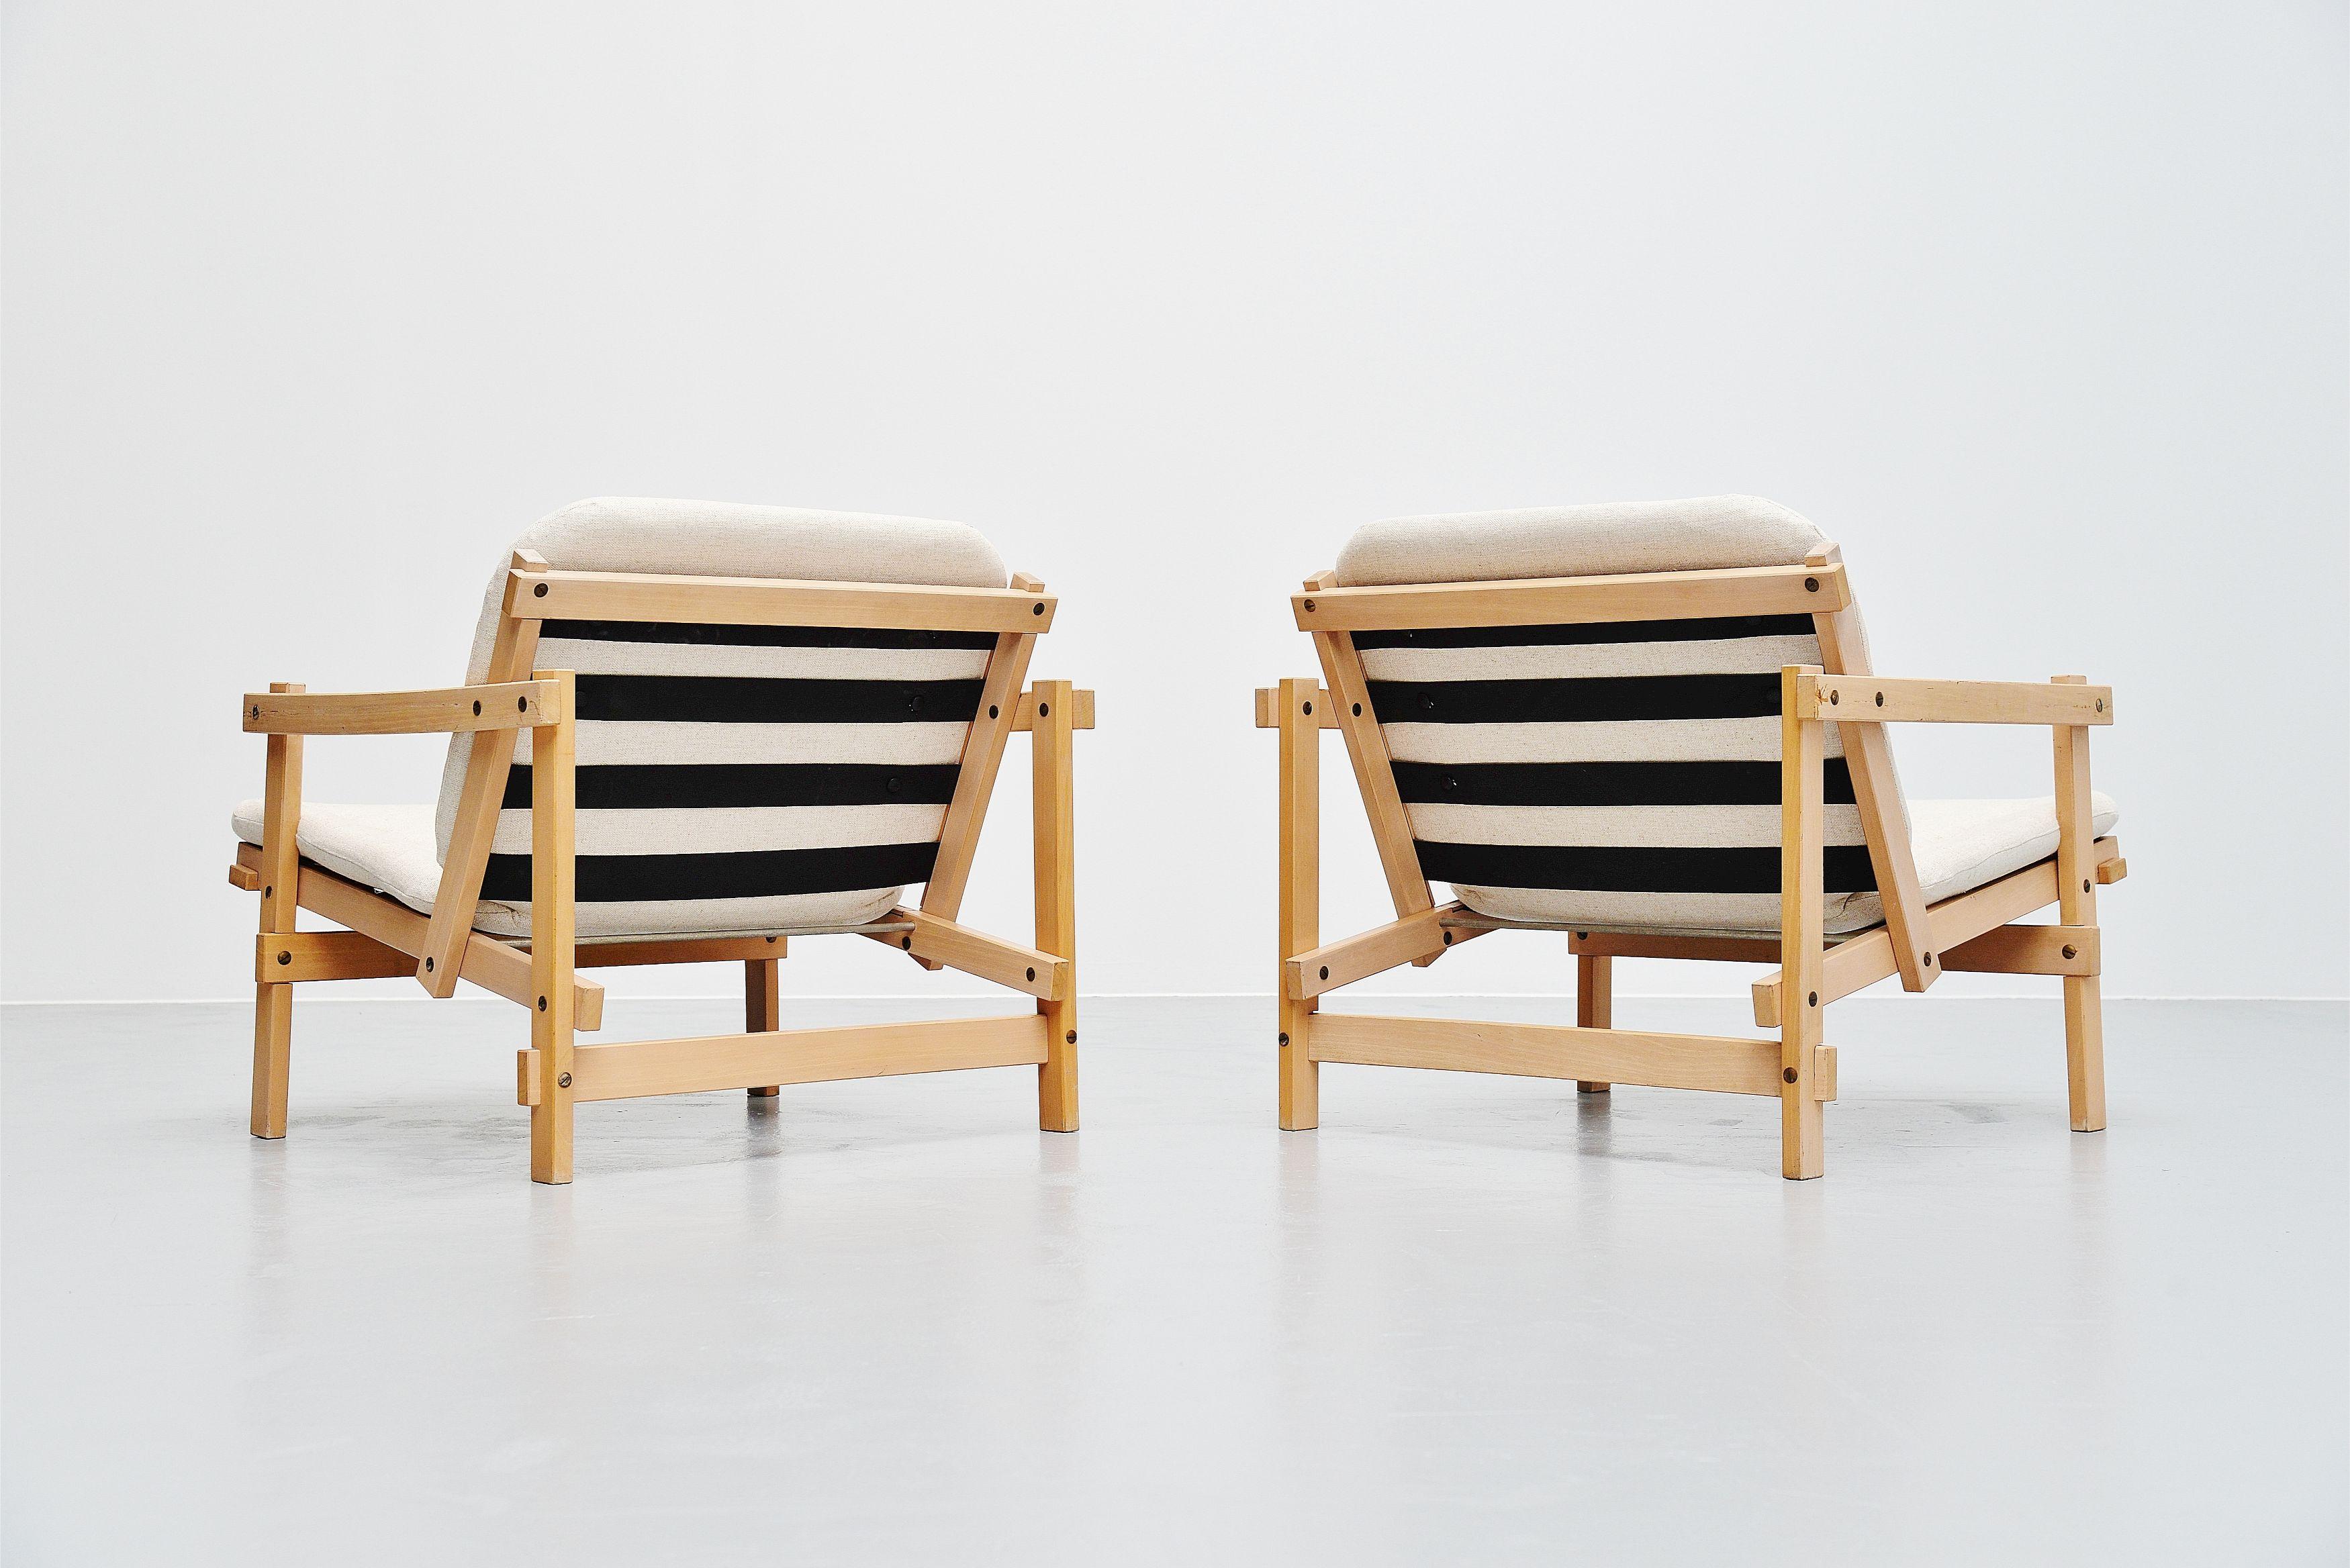 Rare paire de chaises longues 'Cleon' conçues par Martin Visser et fabriquées par 't Spectrum, Hollande 1964. Les chaises ont une structure en lattes de hêtre massif qui a été blanchie. Ce design a été clairement inspiré par les œuvres de Gerrit